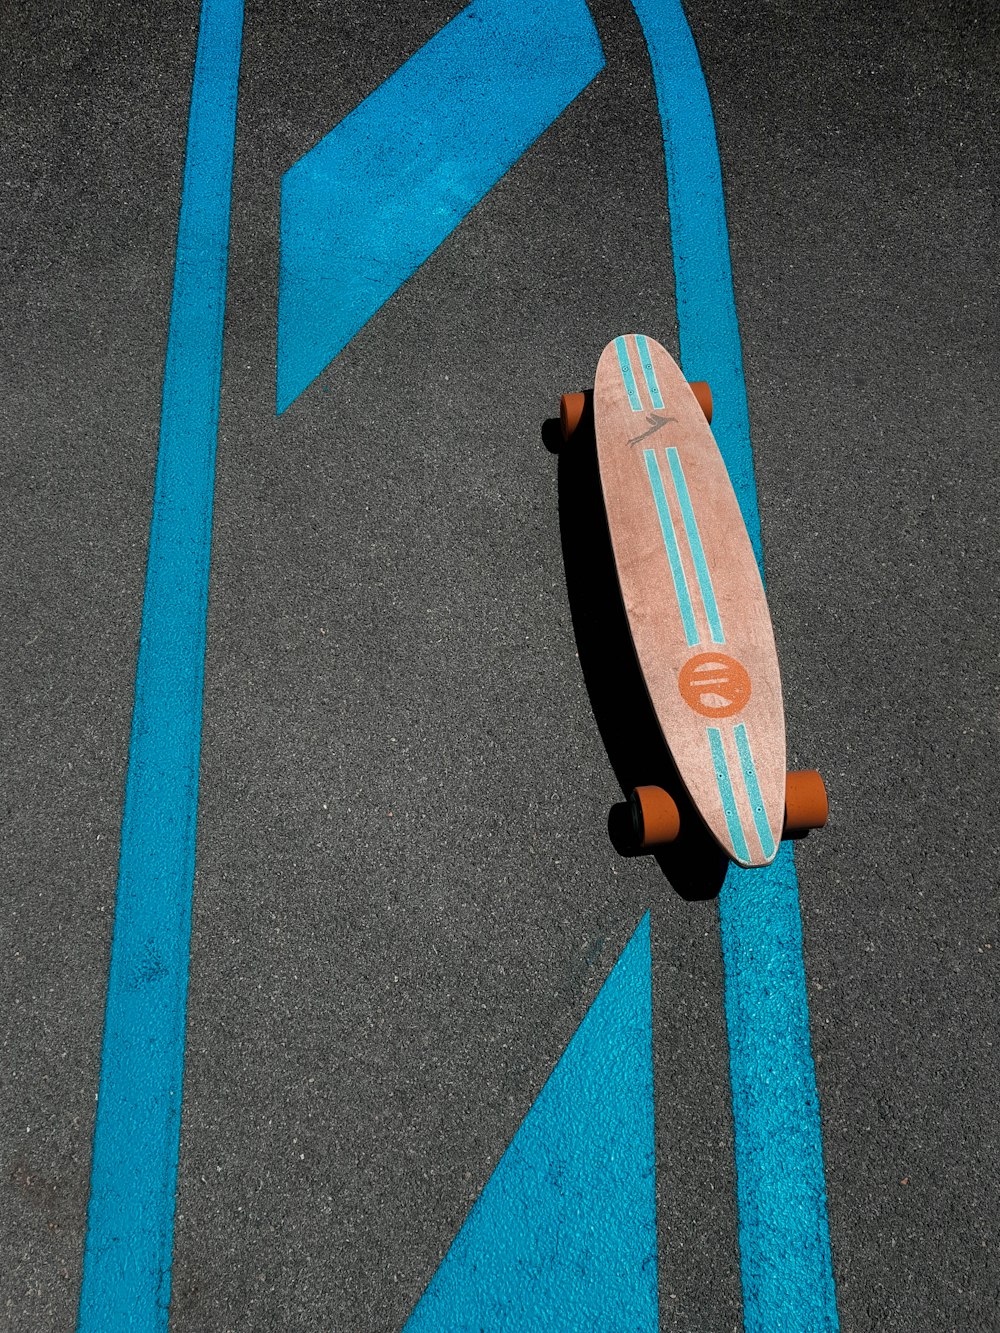 skateboard marrone e arancione su strada di cemento grigio